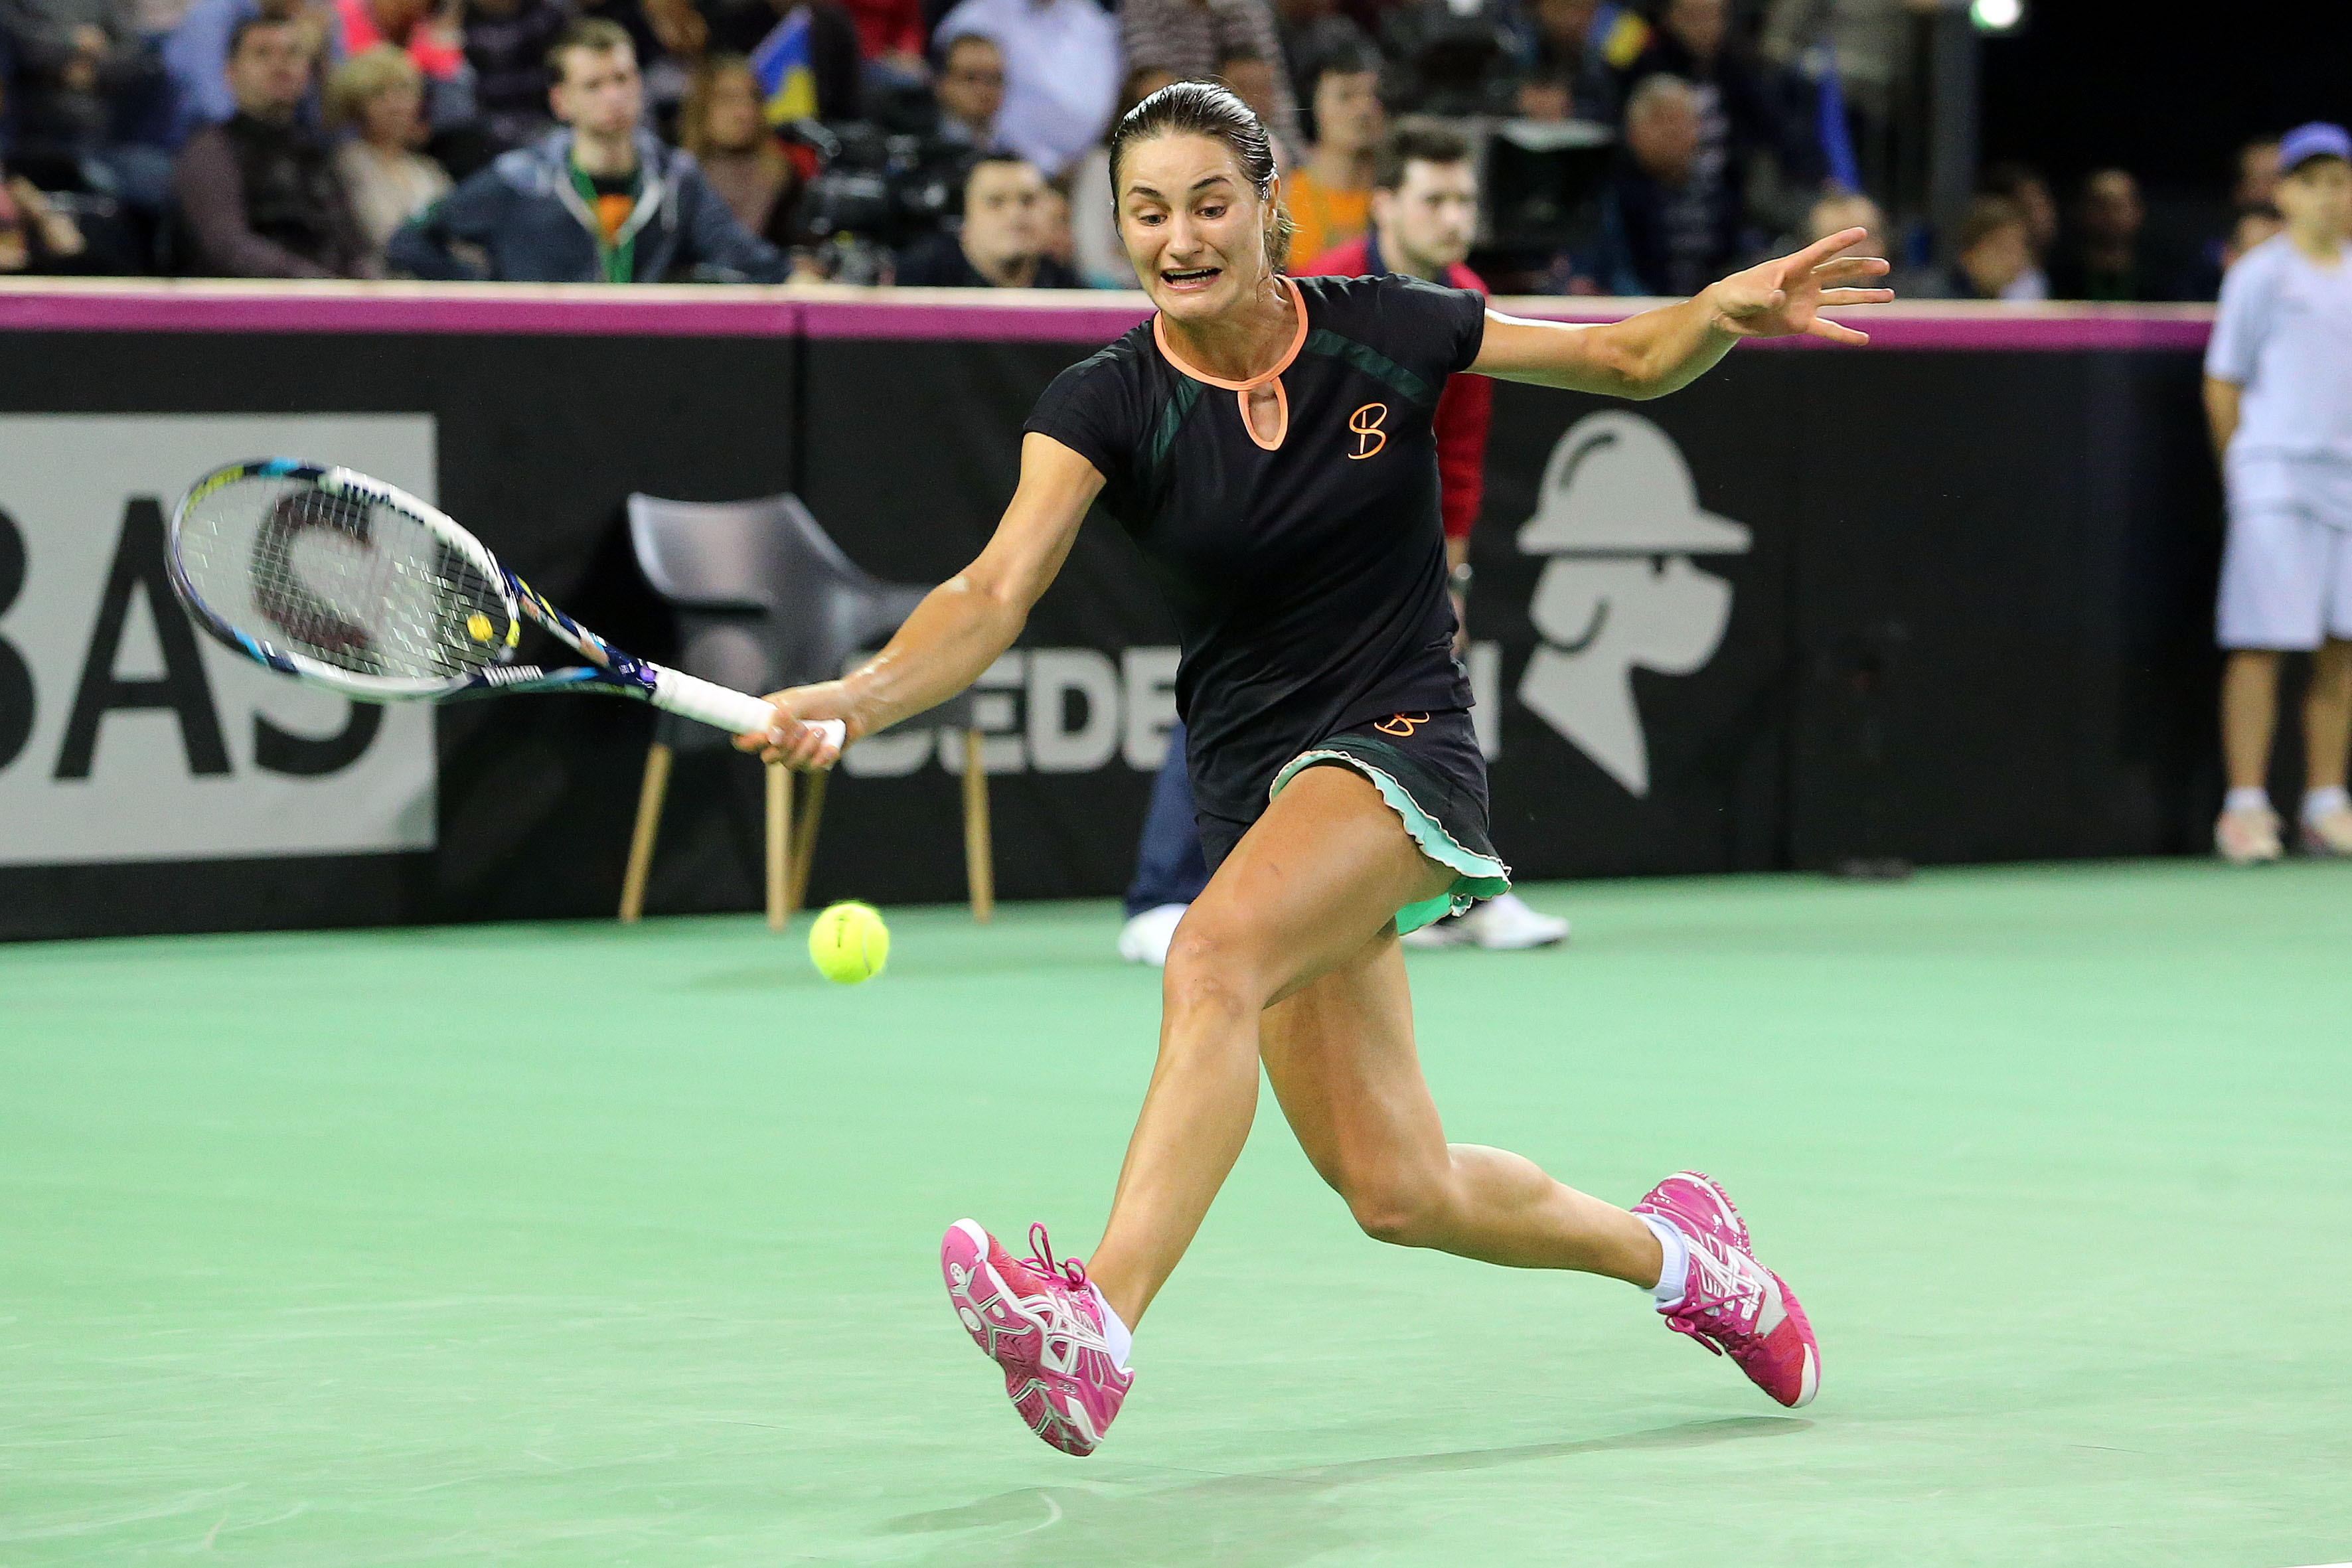 Victorie senzaţională: Monica Niculescu a învins-o pe Maria Şarapova şi s-a calificat în turul doi al turneului de la Doha